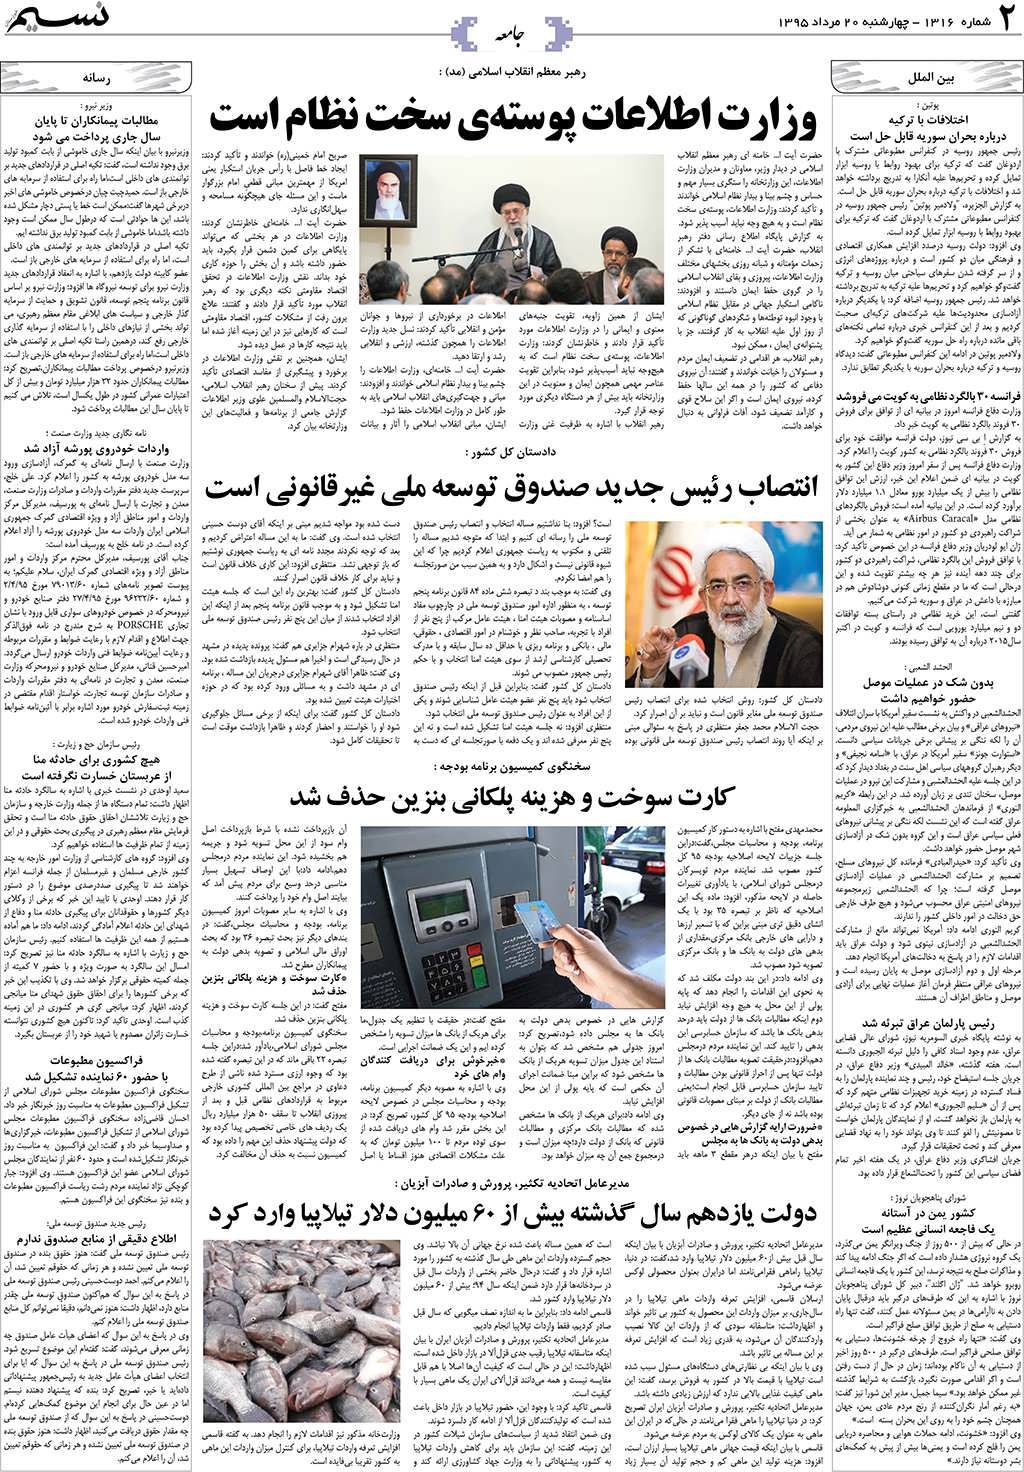 صفحه جامعه روزنامه نسیم شماره 1316